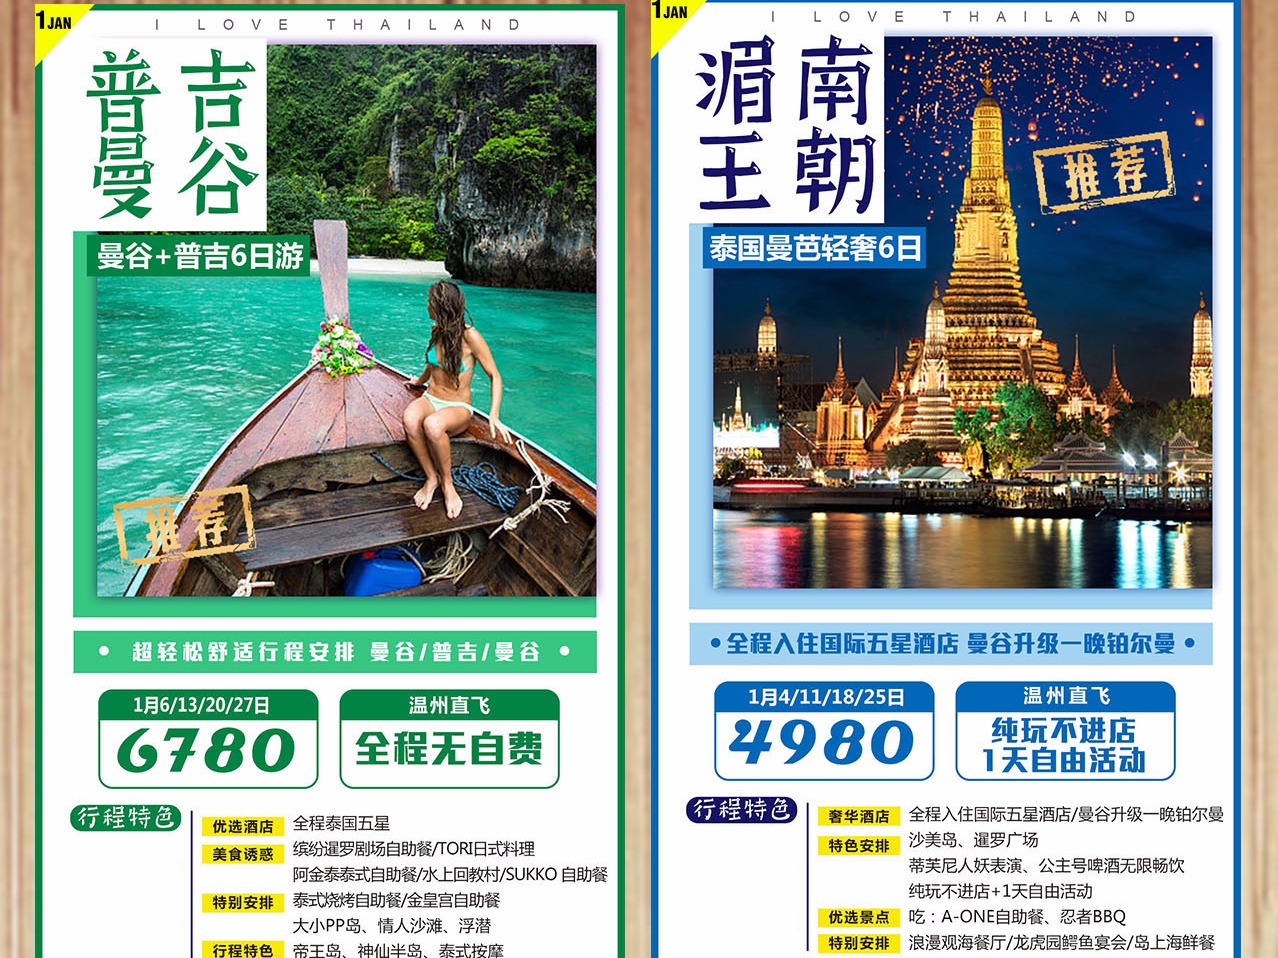 2月 旅游海报 泰国 新加坡 海岛 普吉 巴厘岛